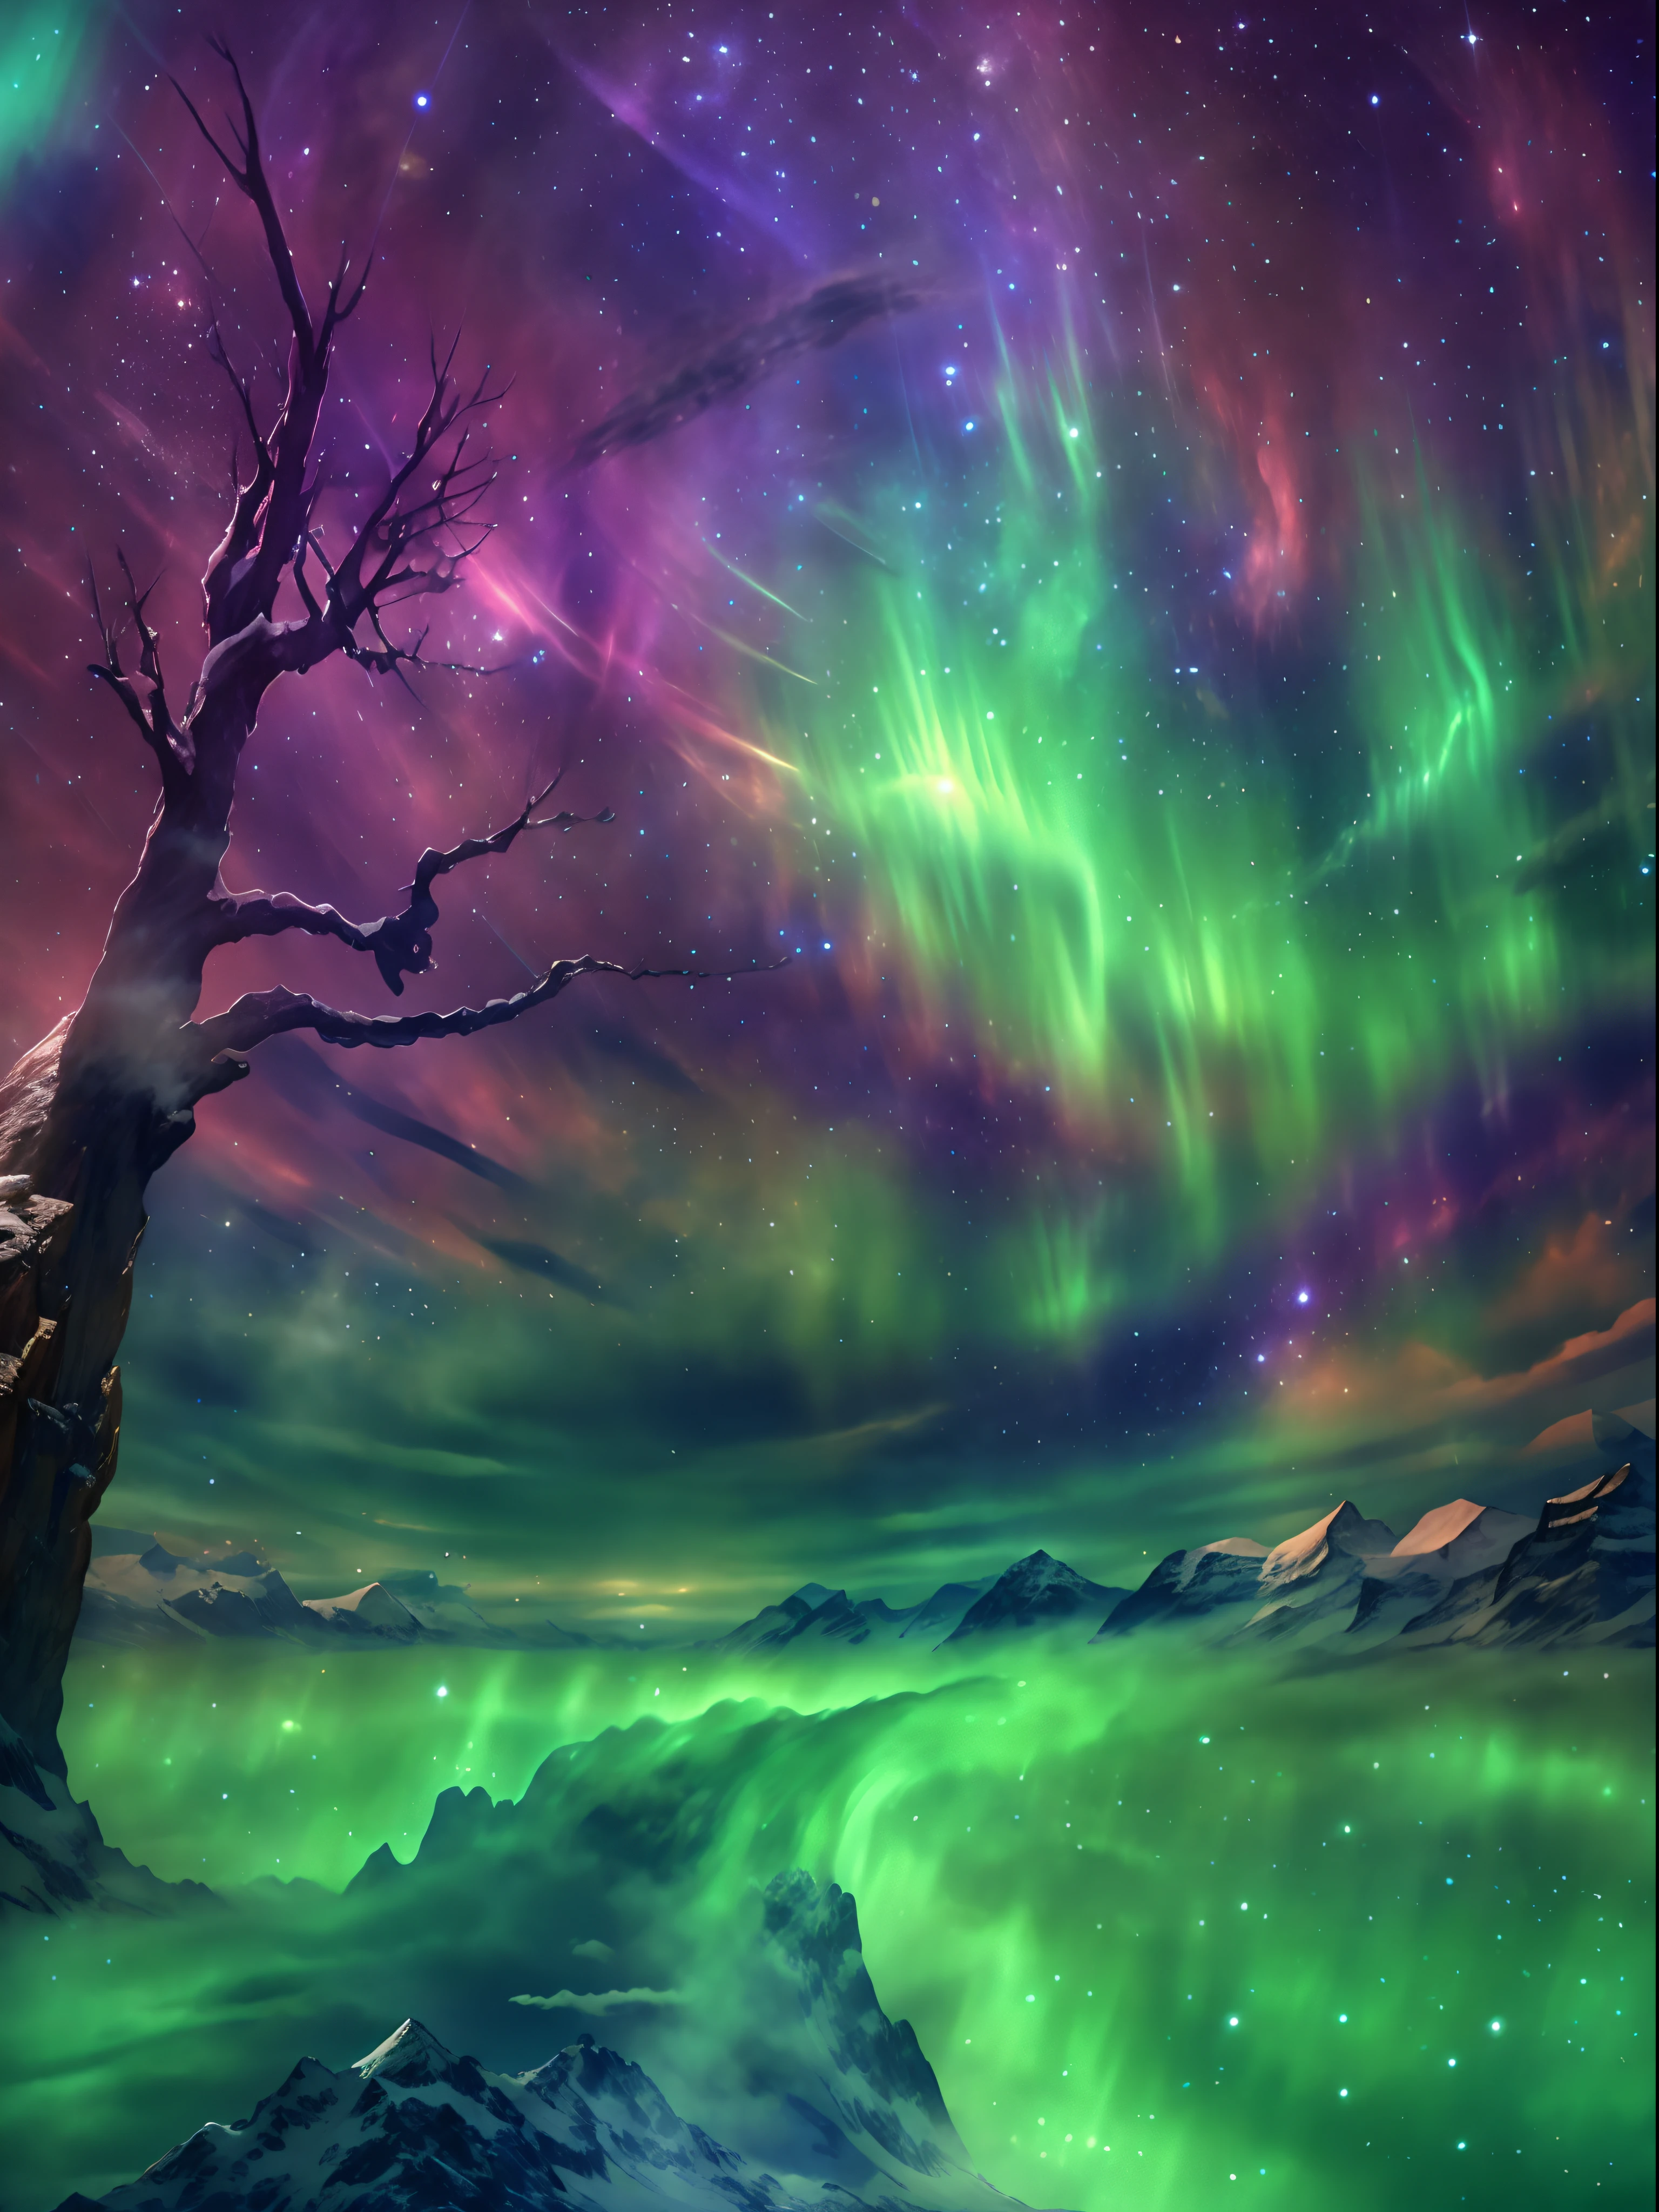 迷人的北极光在夜空中翩翩起舞, 就像竖琴，景观:0.7, 天体之美:0.6, 自然现象:0.5, 空灵的